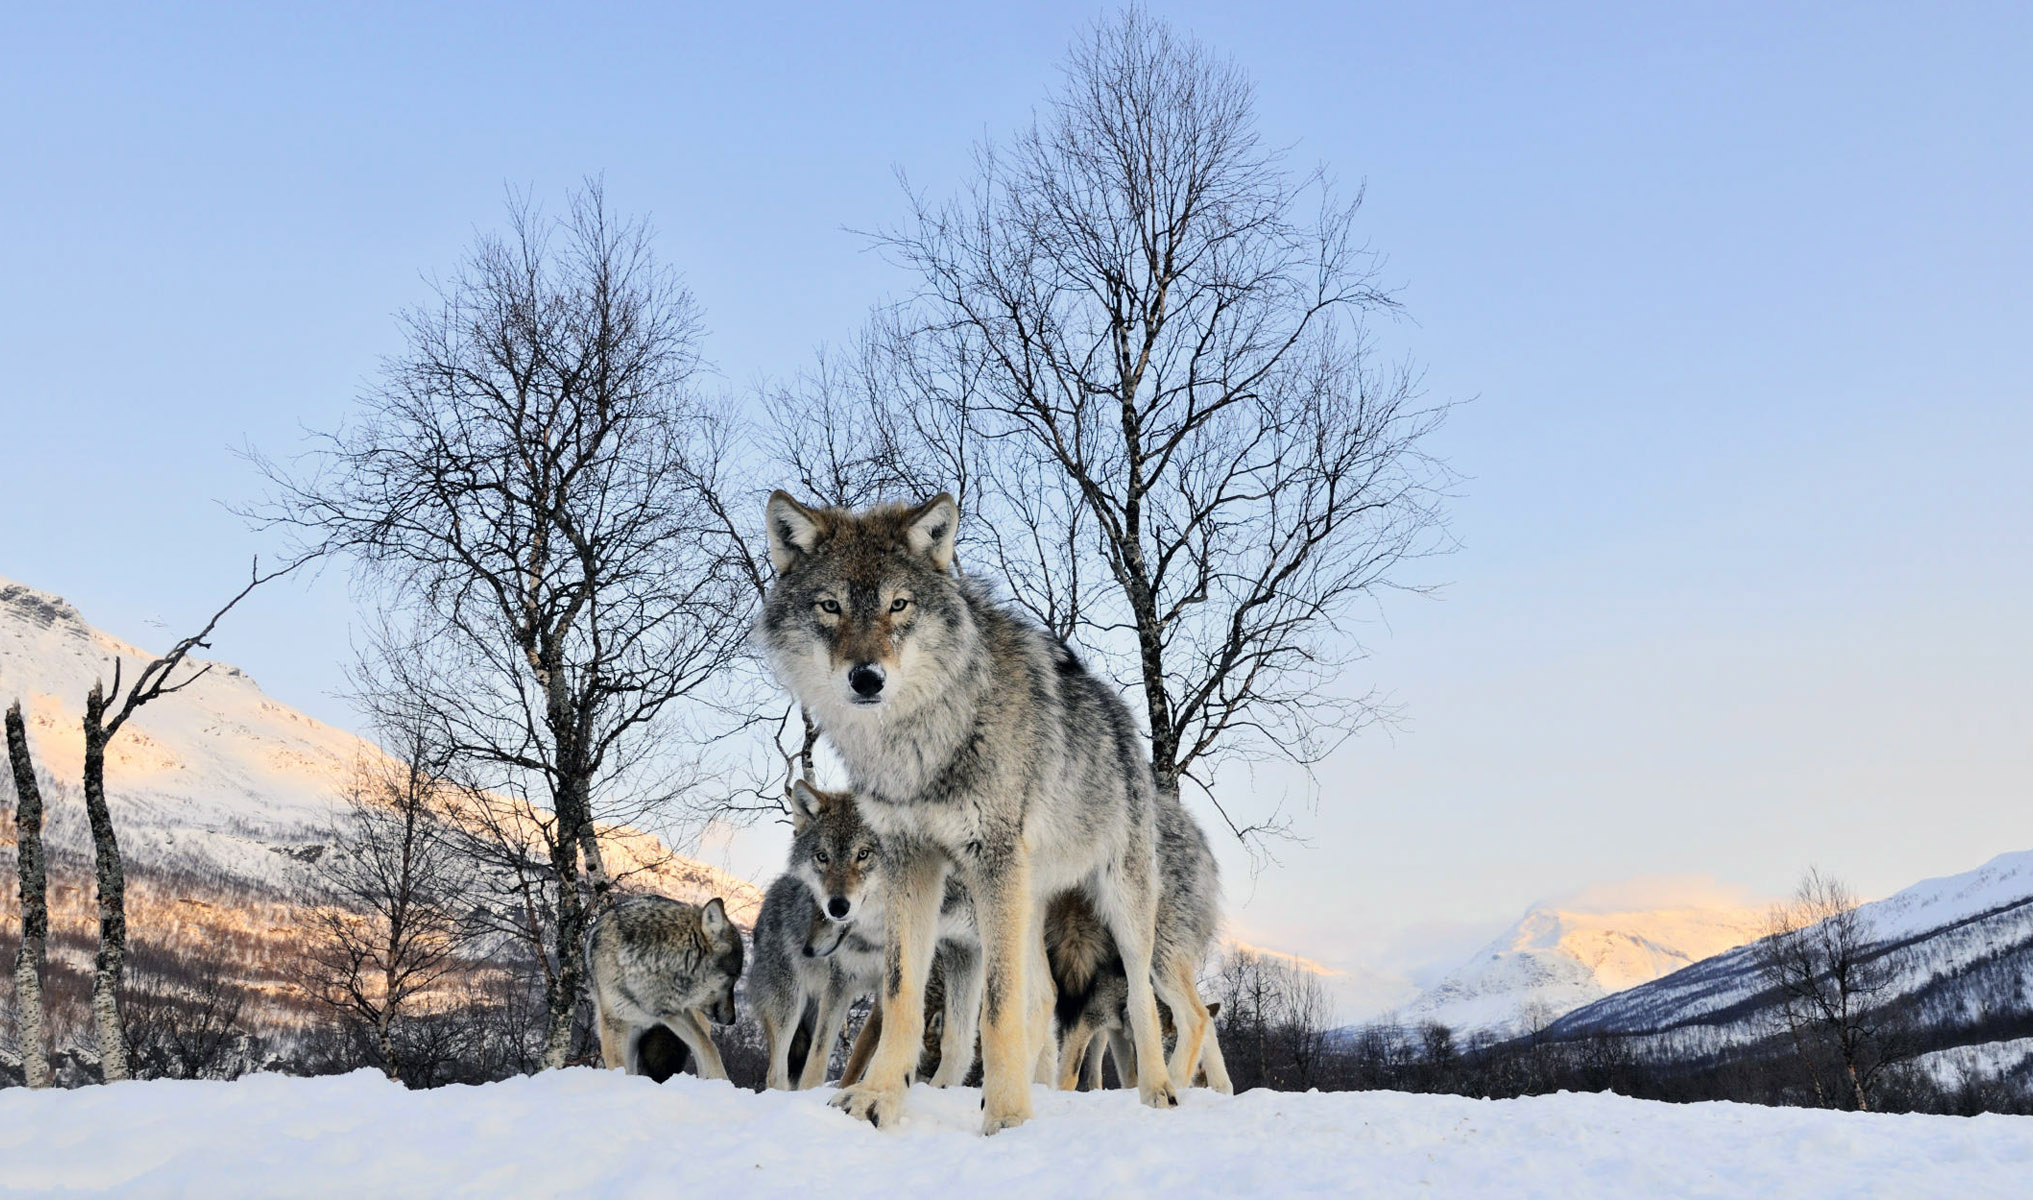 Скачать обои бесплатно Животные, Волки, Зима, Снег, Дерево, Волк картинка на рабочий стол ПК